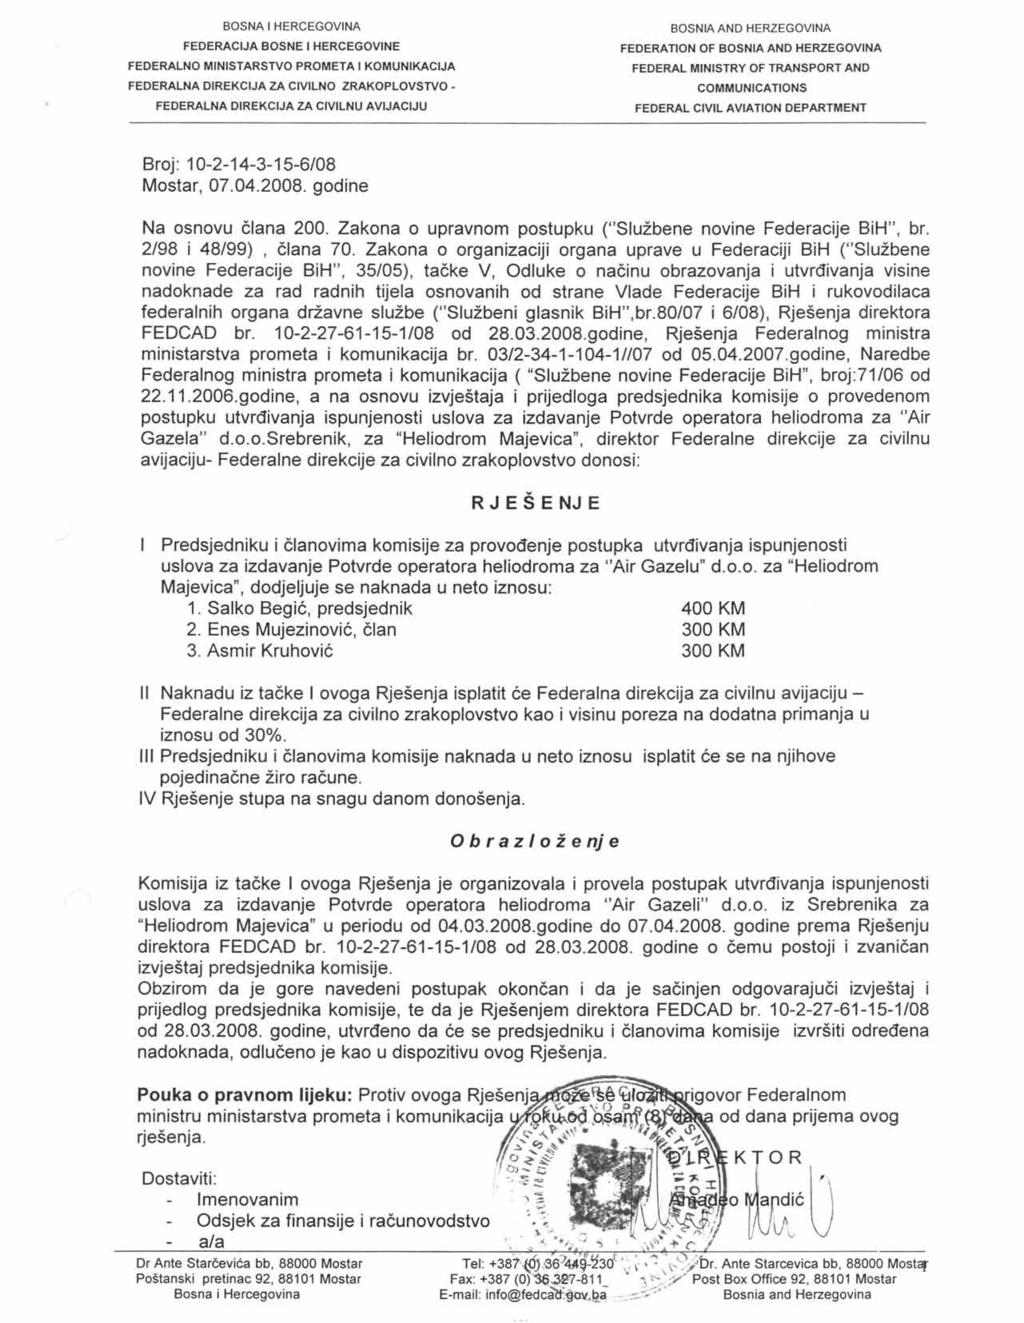 FEDERATION OF Broj: 10-2-14-3-15-6/08 Mostar, 07.04.2008. godine Na osnovu člana 200. Zakona o upravnom postupku ("Službene novine Federacije BiH", br. 2/98 i 48/99), člana 70.